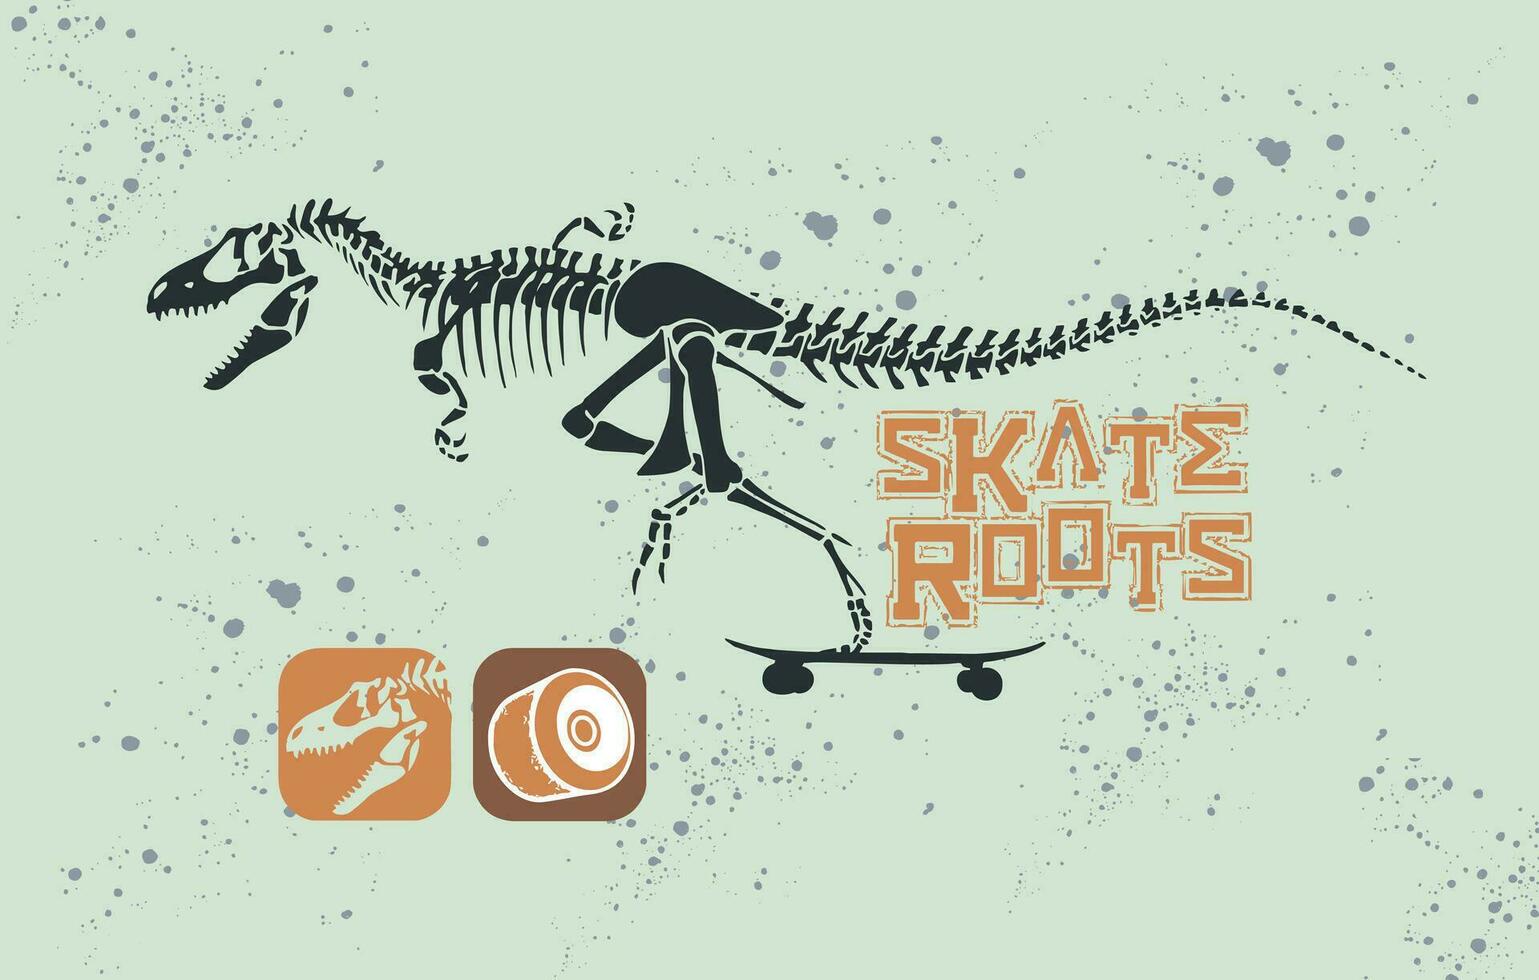 vektor illustration av velociraptor fossil ridning en skateboard. konst med text och element relaterad till sport.